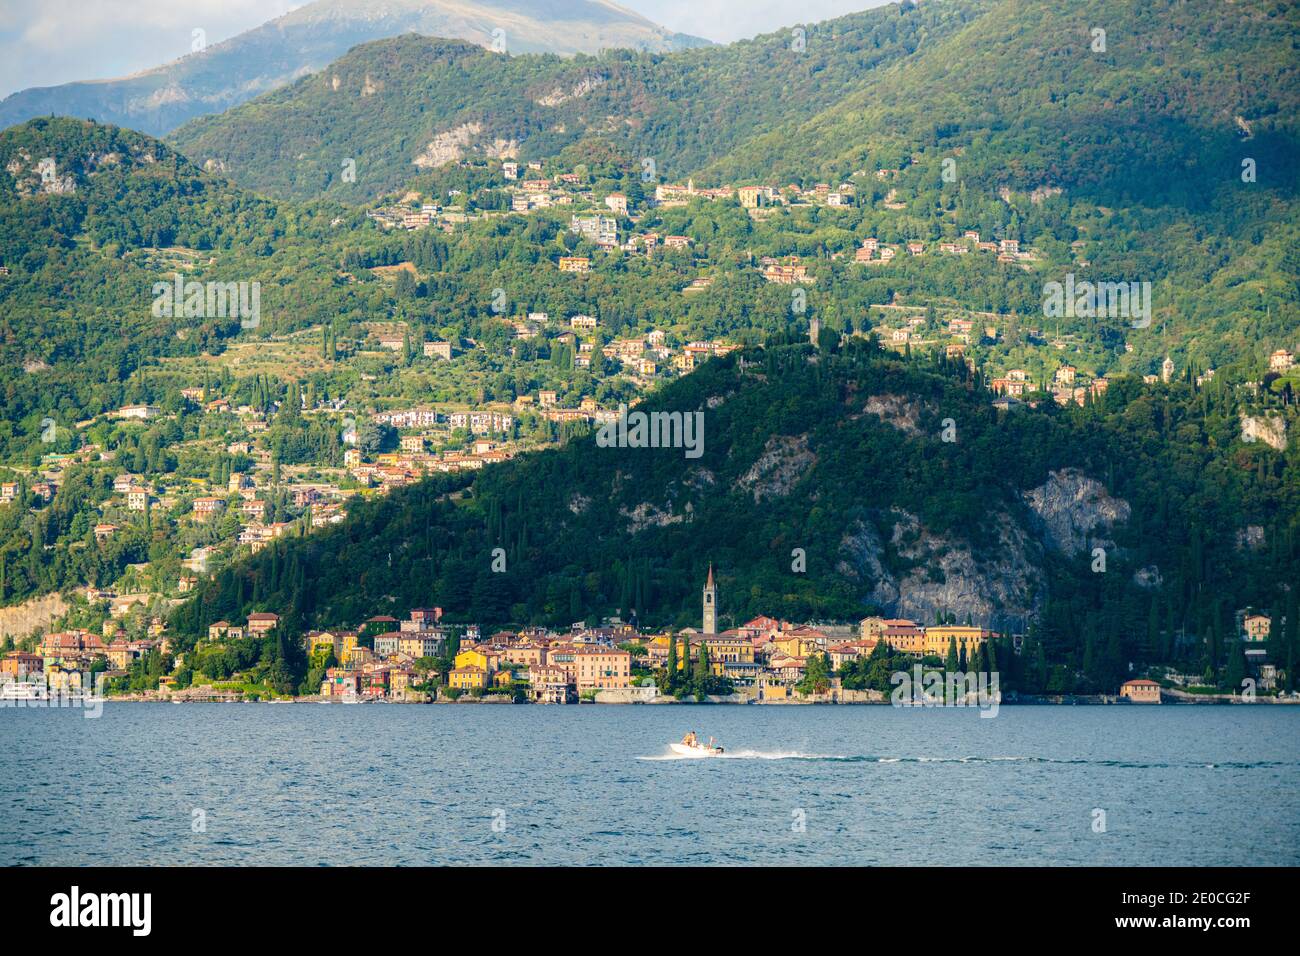 Varenna und Dörfer auf Hügeln von der Fähre gesehen, Comer See, Provinz Lecco, Lombardei, Italienische Seen, Italien, Europa Stockfoto